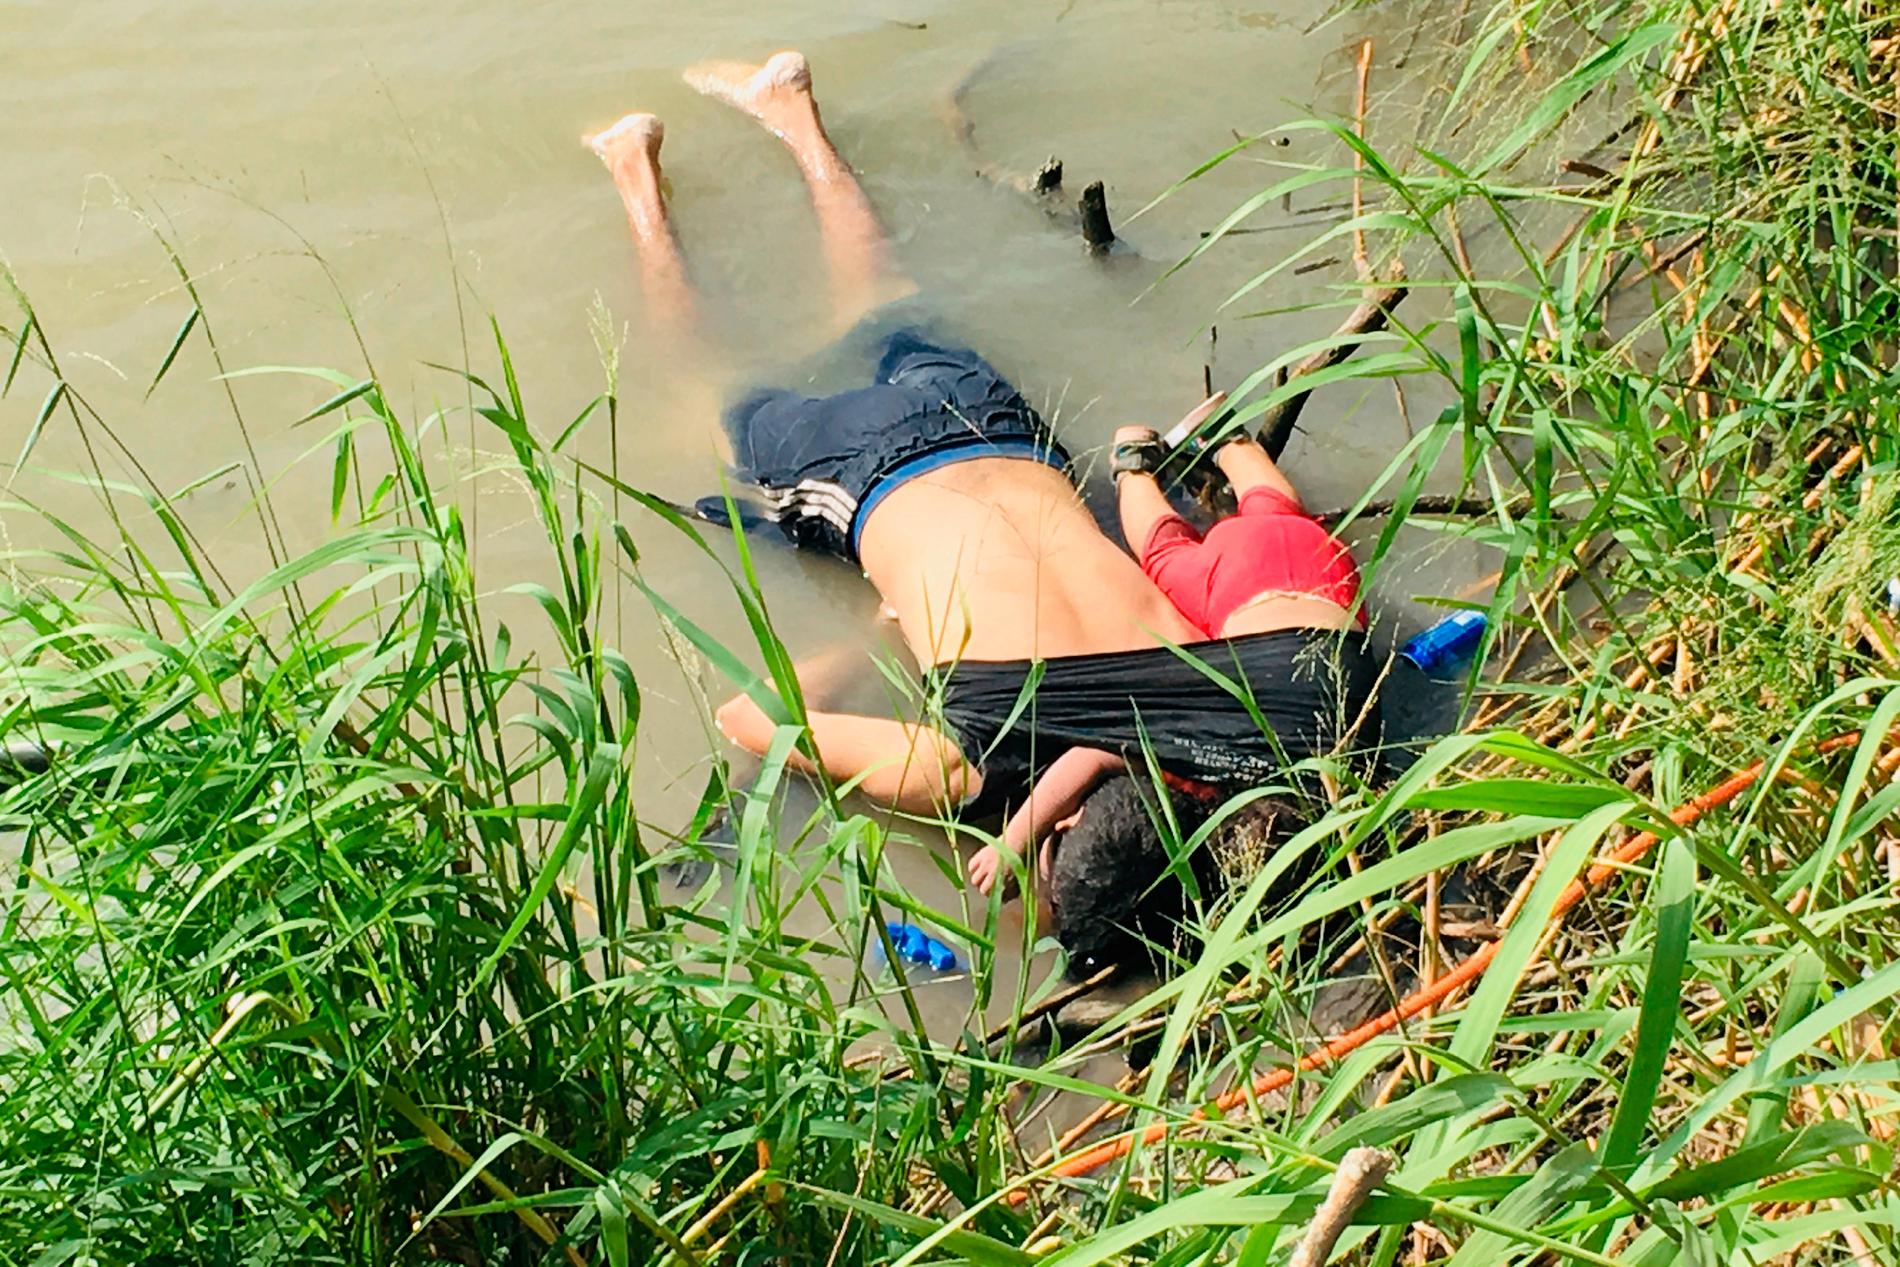 26-årige Óscar Alberto Martínez Ramírez och dottern Valeria hittades drunknade i närheten av den mexikanska gränsstaden Matamoros i måndags.